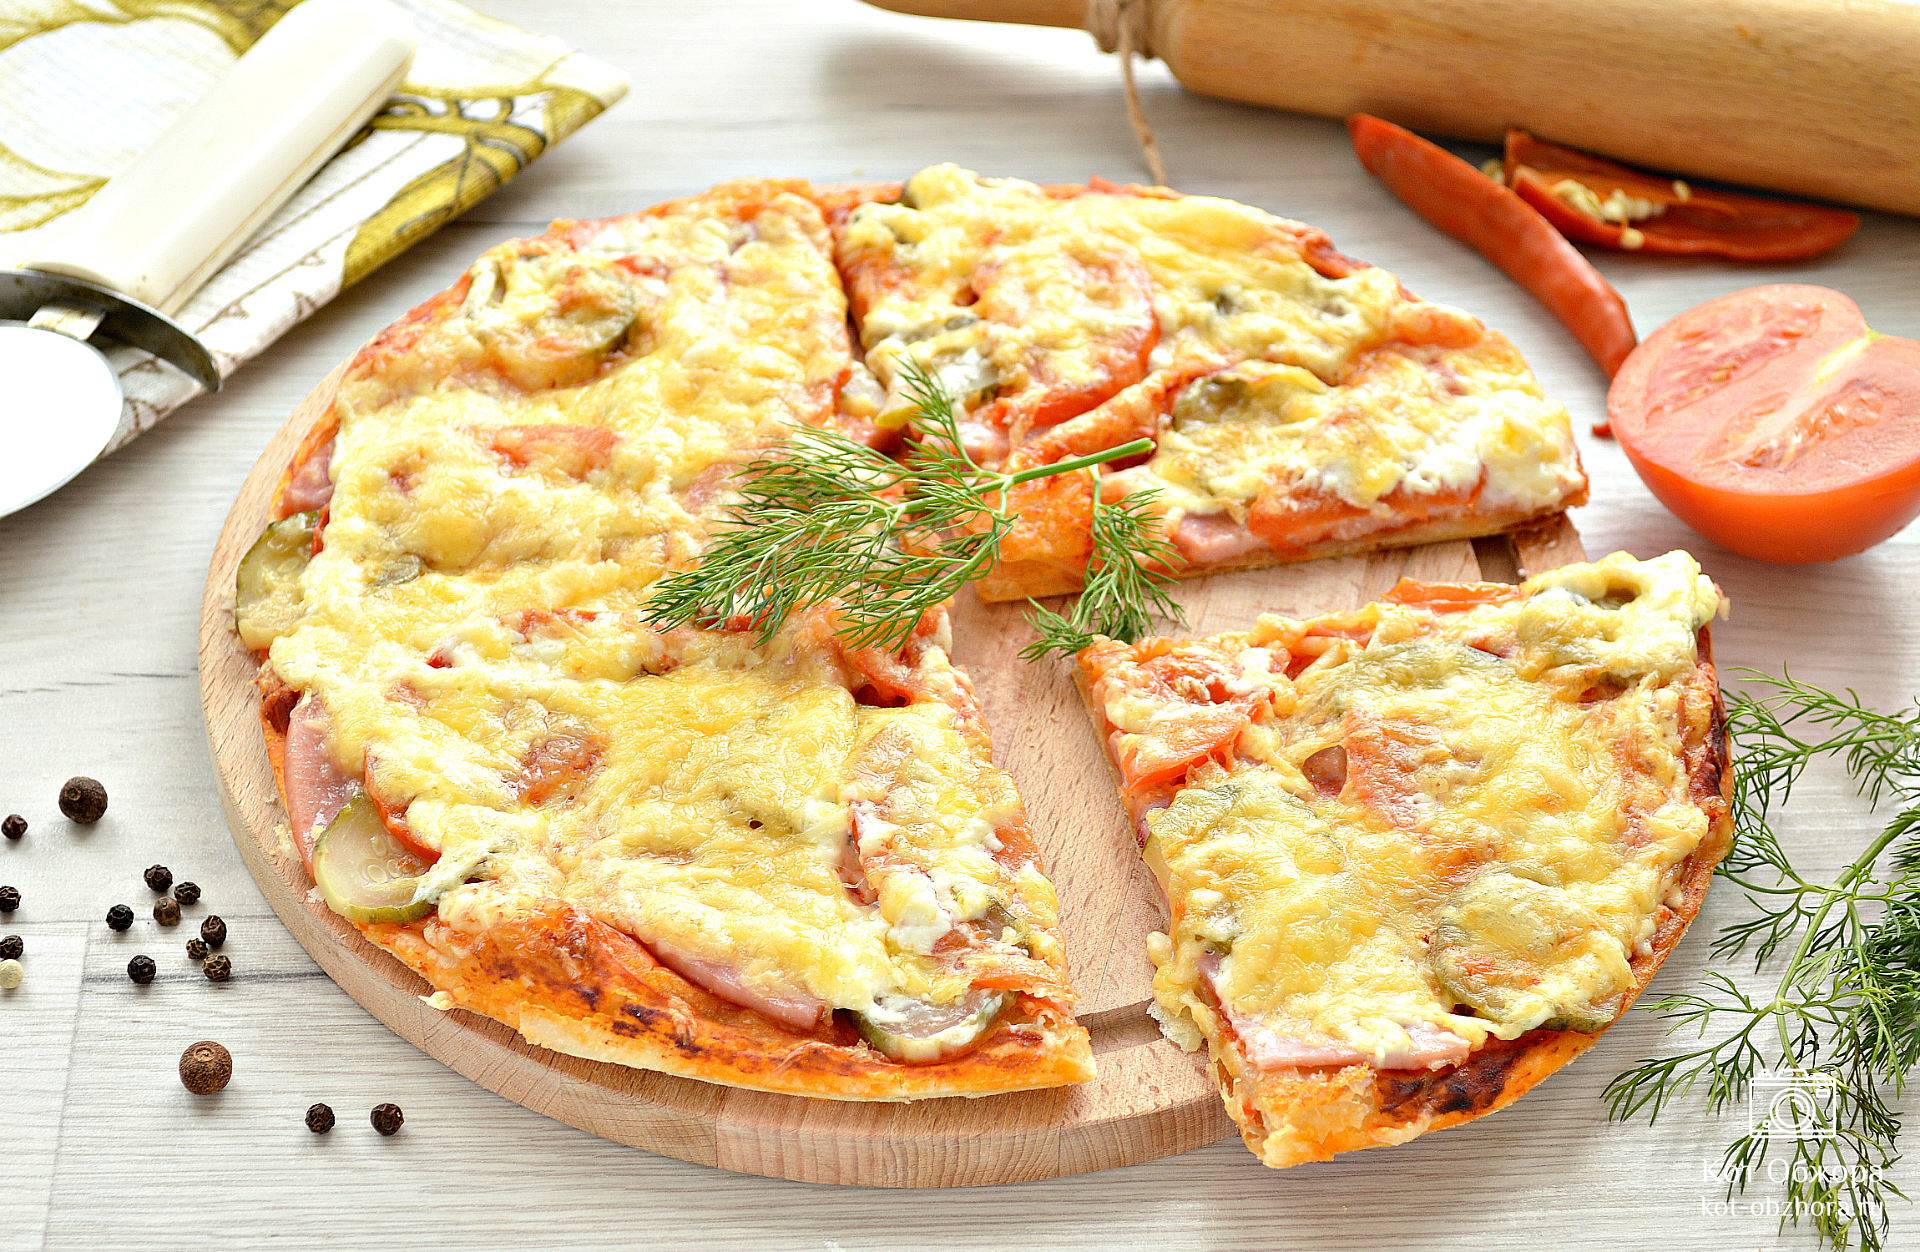 приготовить пиццу в домашних условиях в духовке пошагово из дрожжевого теста с колбасой и сыром фото 95